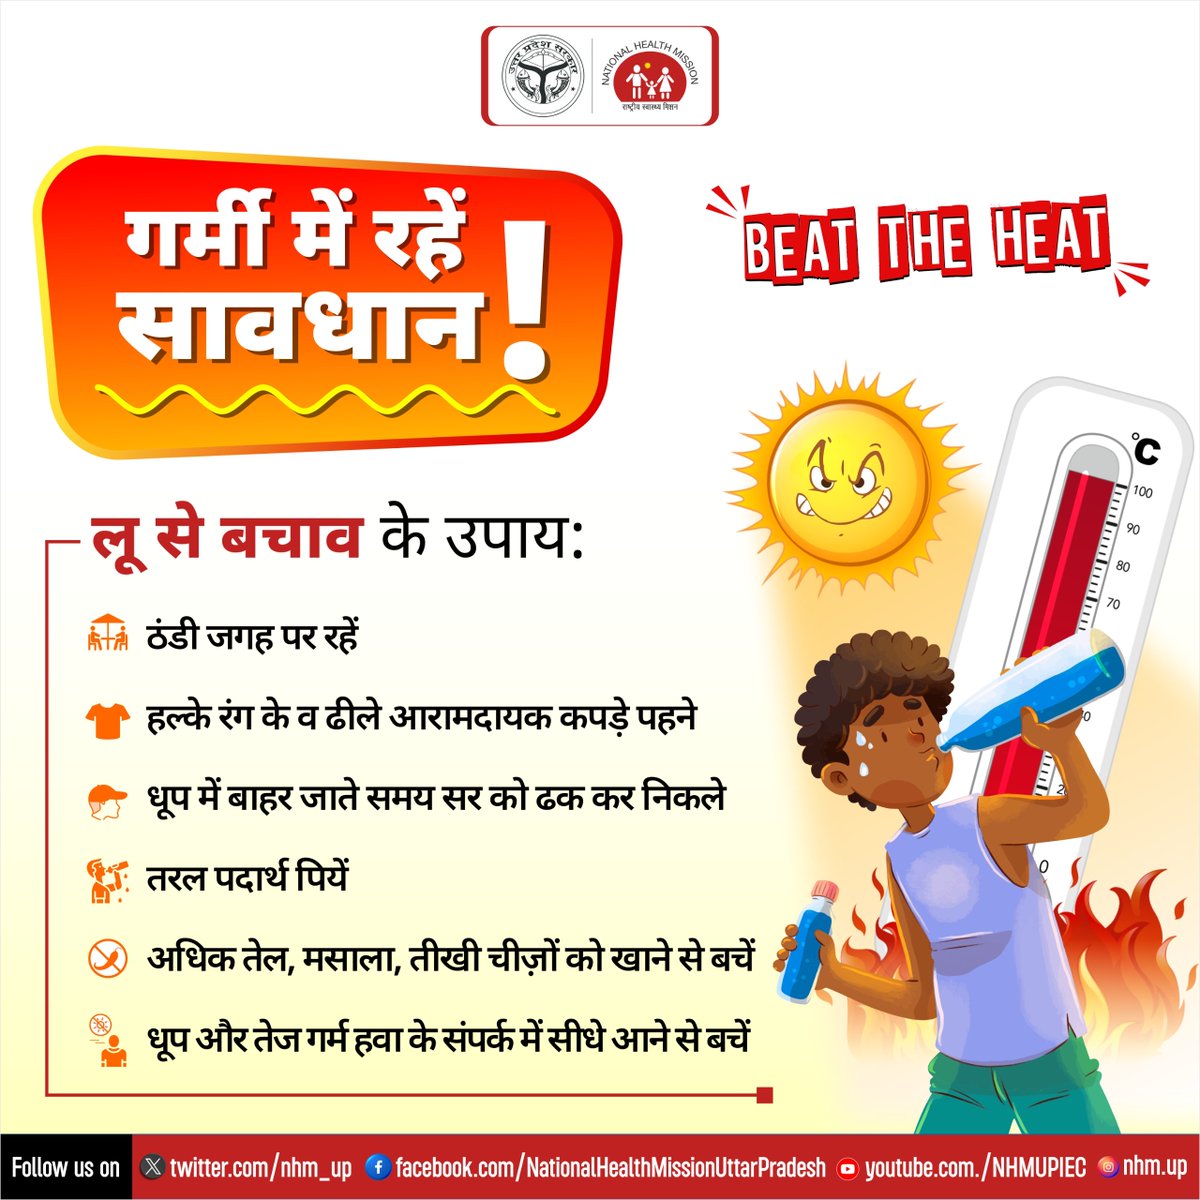 गर्मी से करें बचाव, सुरक्षित उपायों का रखें ध्यान 🌞

#लू से बचाव के लिए जरूरी एहतियात को अपनाकर अपना और अपने परिवार को करें सुरक्षित🧢☂️🍹

#BeatTheHeat
#Heatwave
#HealthyDiets